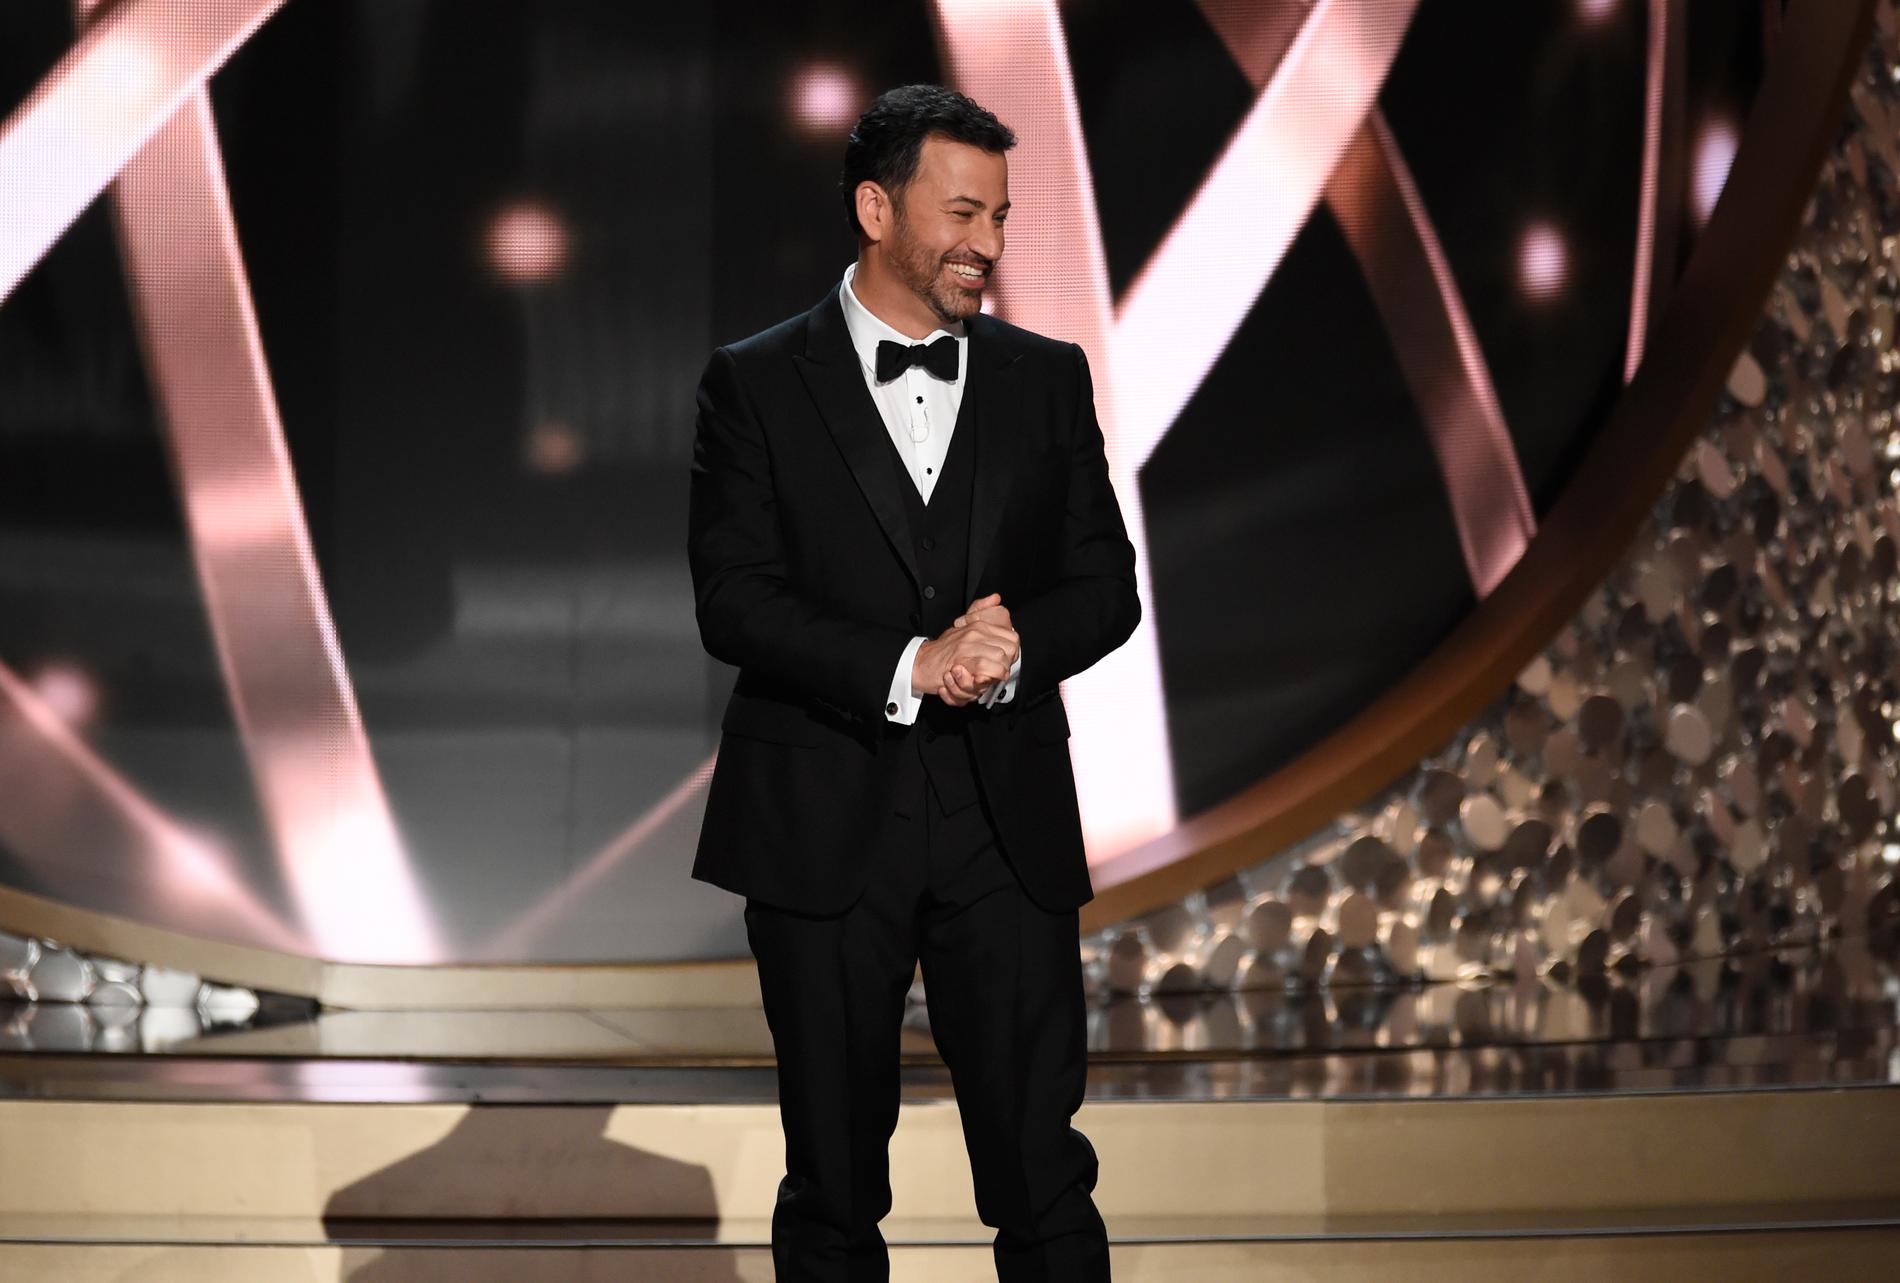 Jimmy Kimmel ledde Emmygalan 2016 och fortsätter så även under den annorlunda galan i år. Arkivbild.